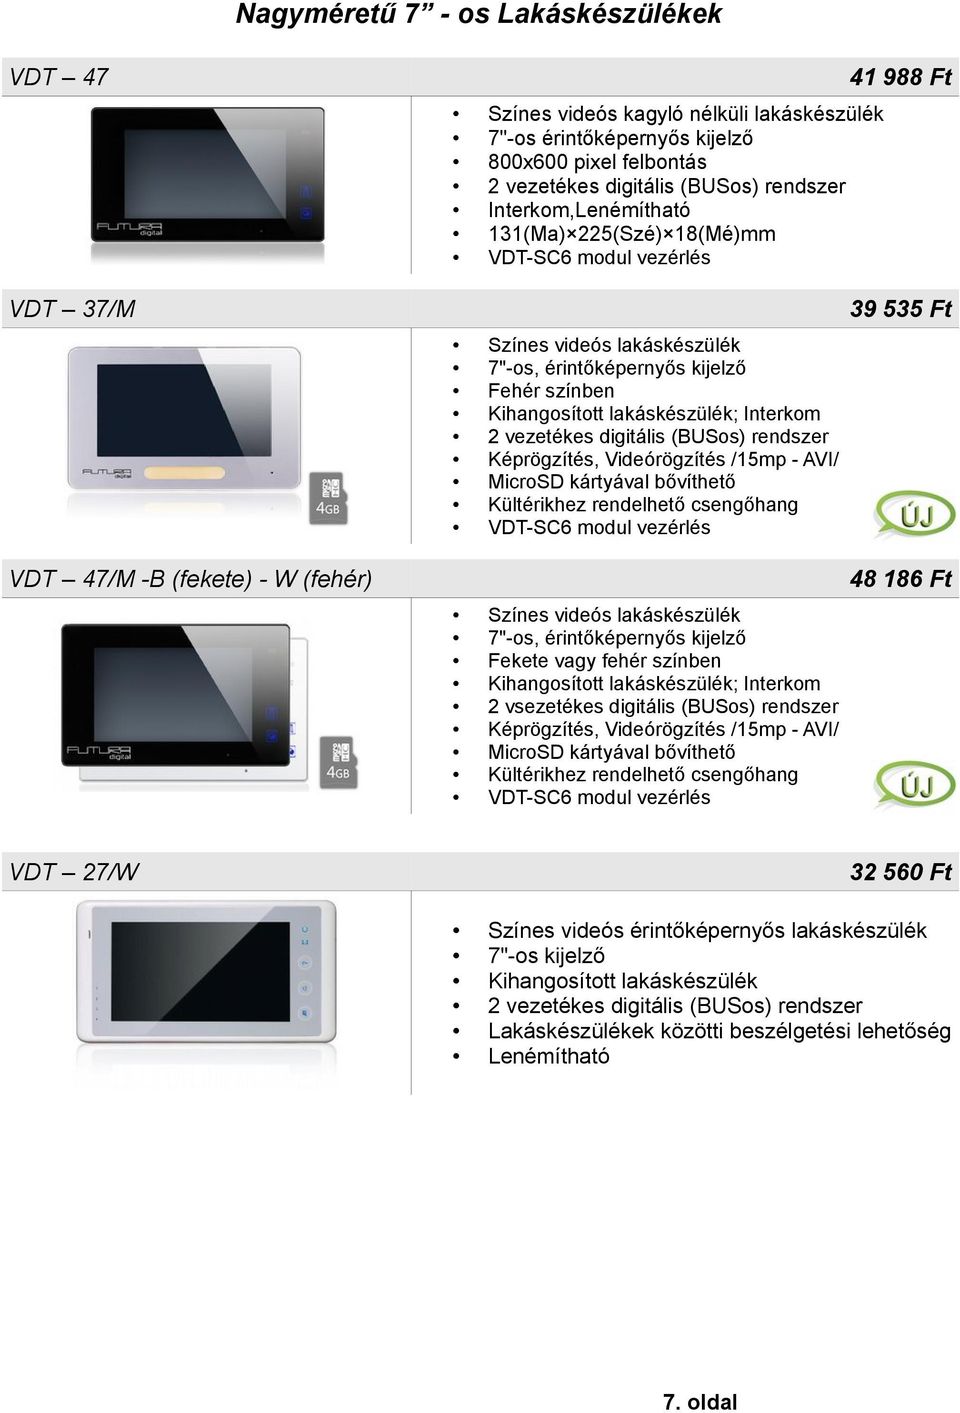 Videórögzítés /15mp - AVI/ MicroSD kártyával bővíthető Kültérikhez rendelhető csengőhang VDT-SC6 modul vezérlés Színes videós lakáskészülék 7"-os, érintőképernyős kijelző Fekete vagy fehér színben